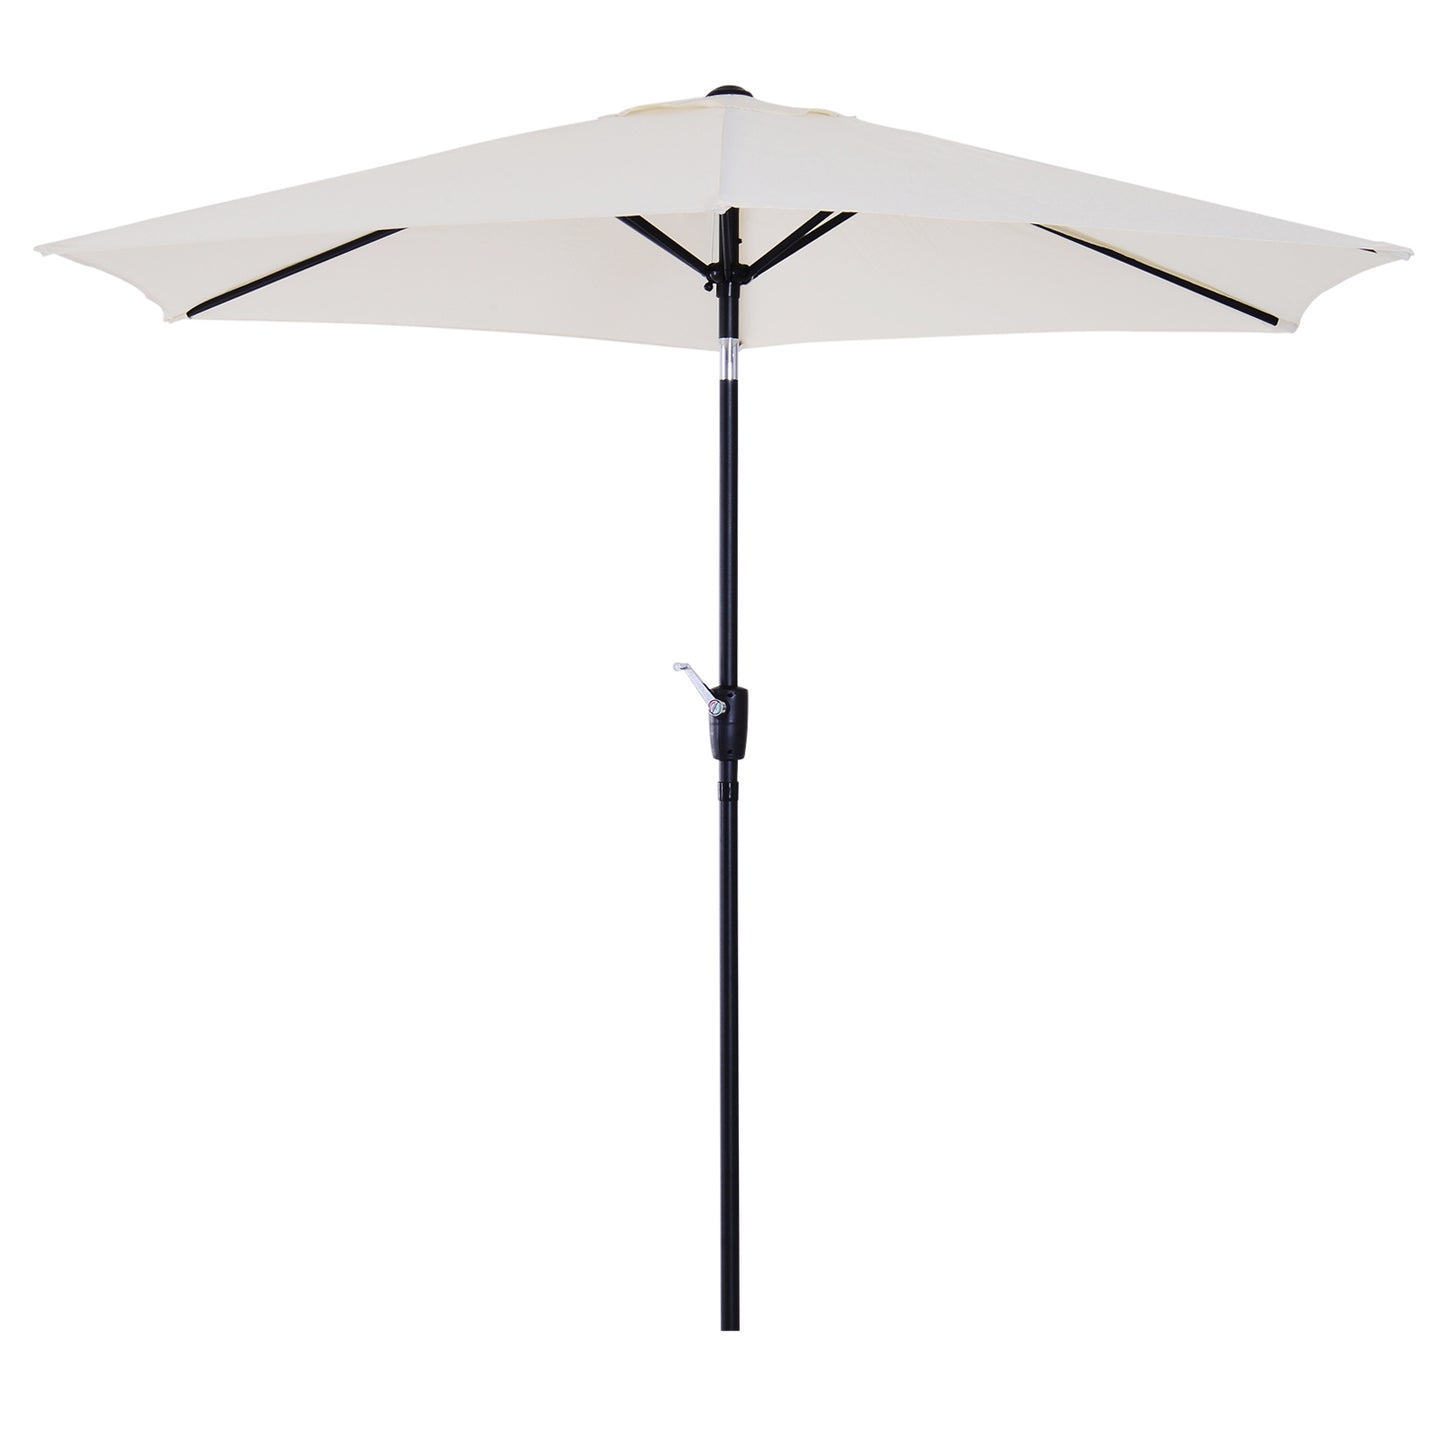 Outsunny 2.7 m Patio Umbrella Sun Shade Tilt Crank Garden Aluminium Frame-Cream White